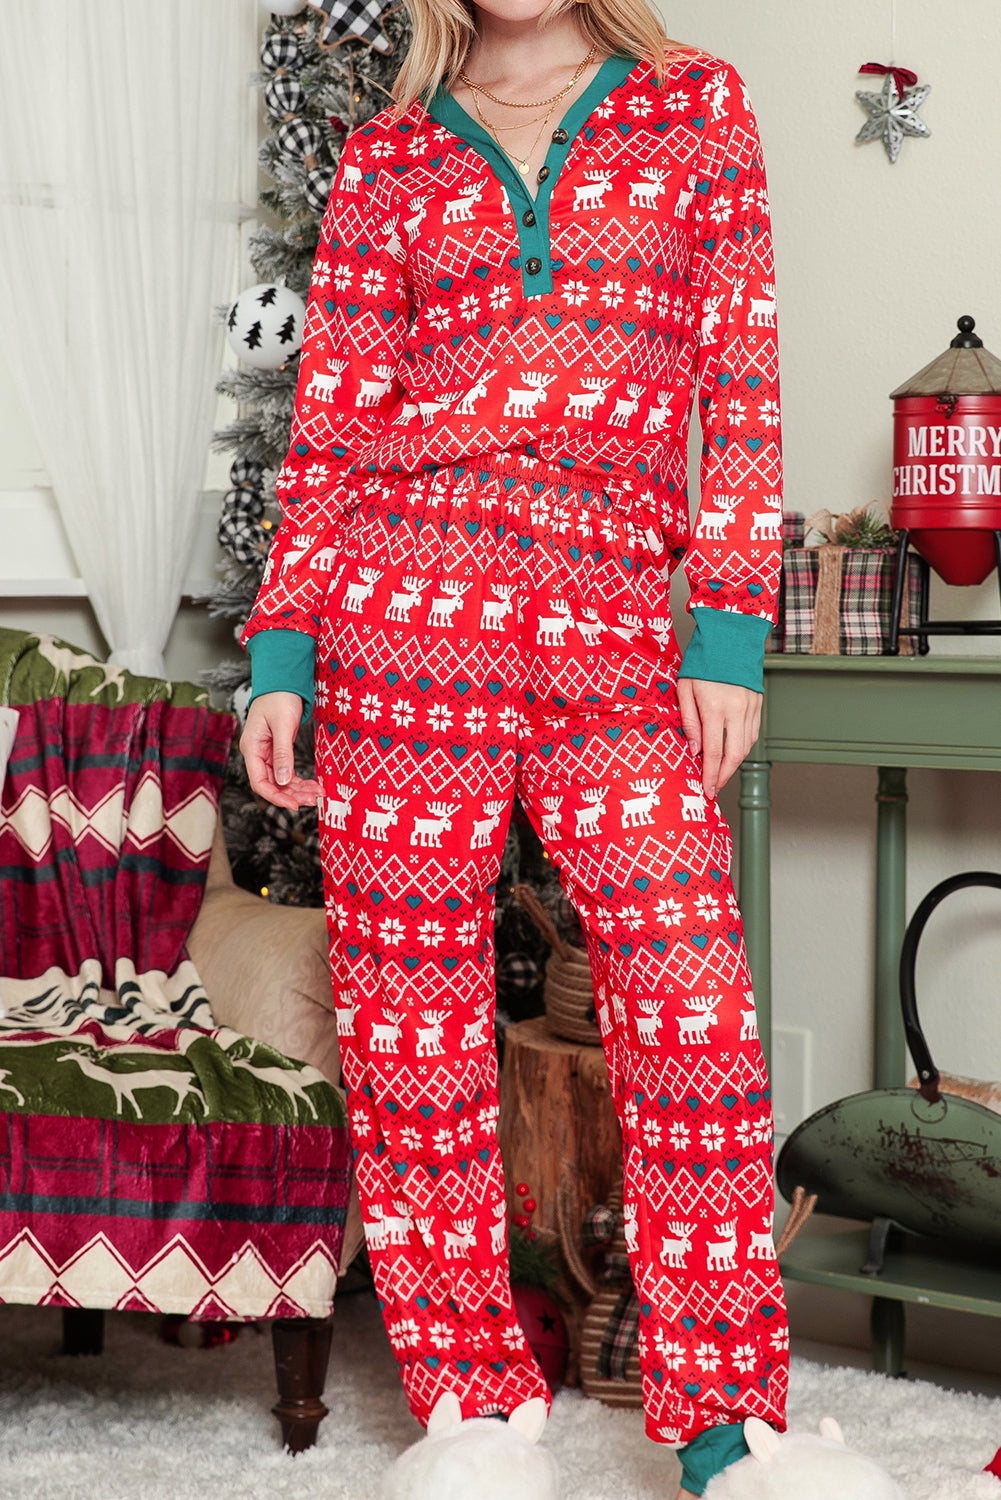 Red Christmas Print Henley Top & Pants Pajama Set